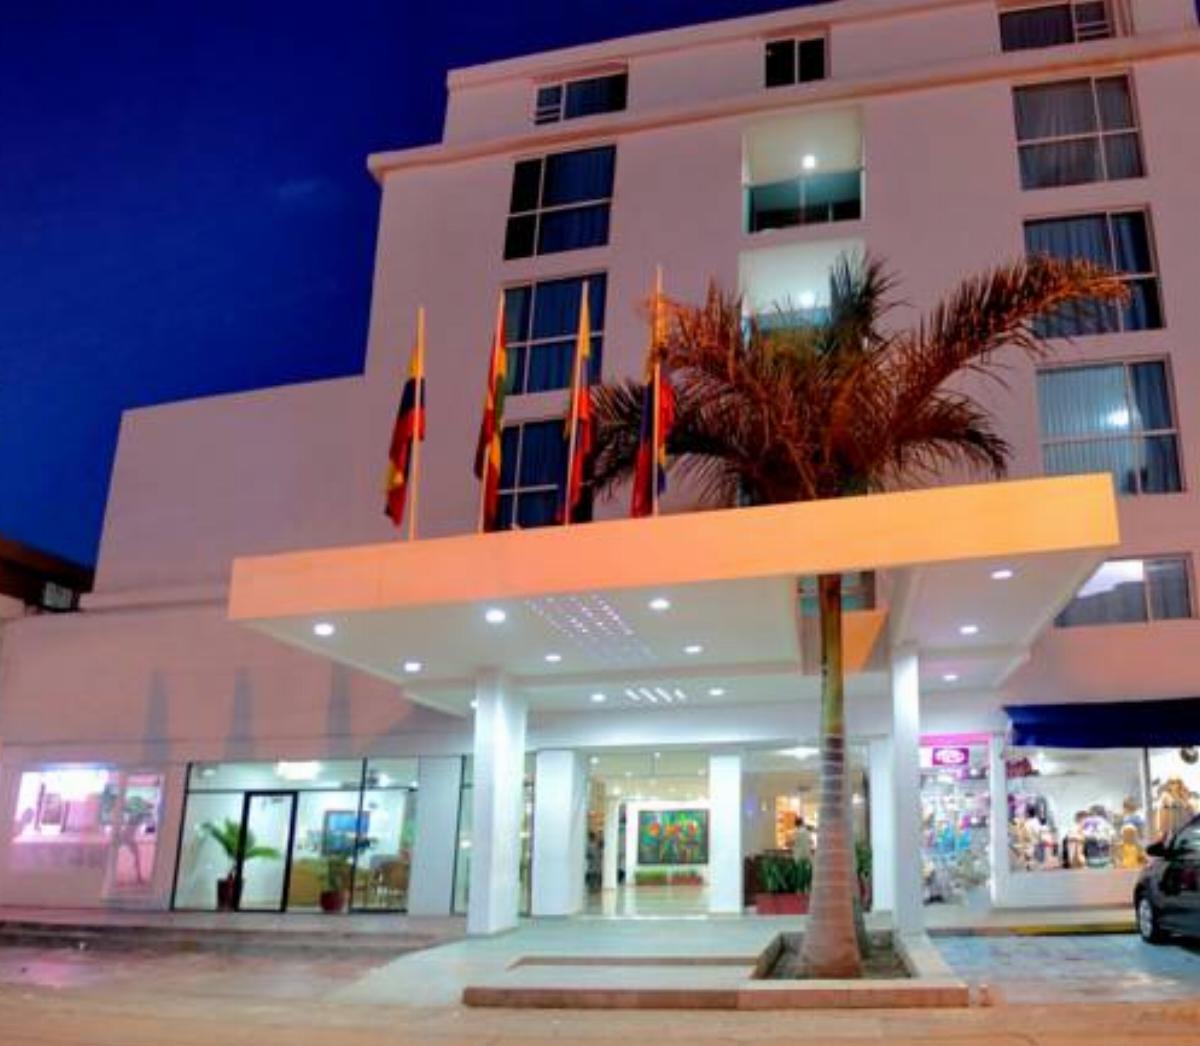 Hotel Playa Club Hotel, Cartagena De Indias, Colombia - overview